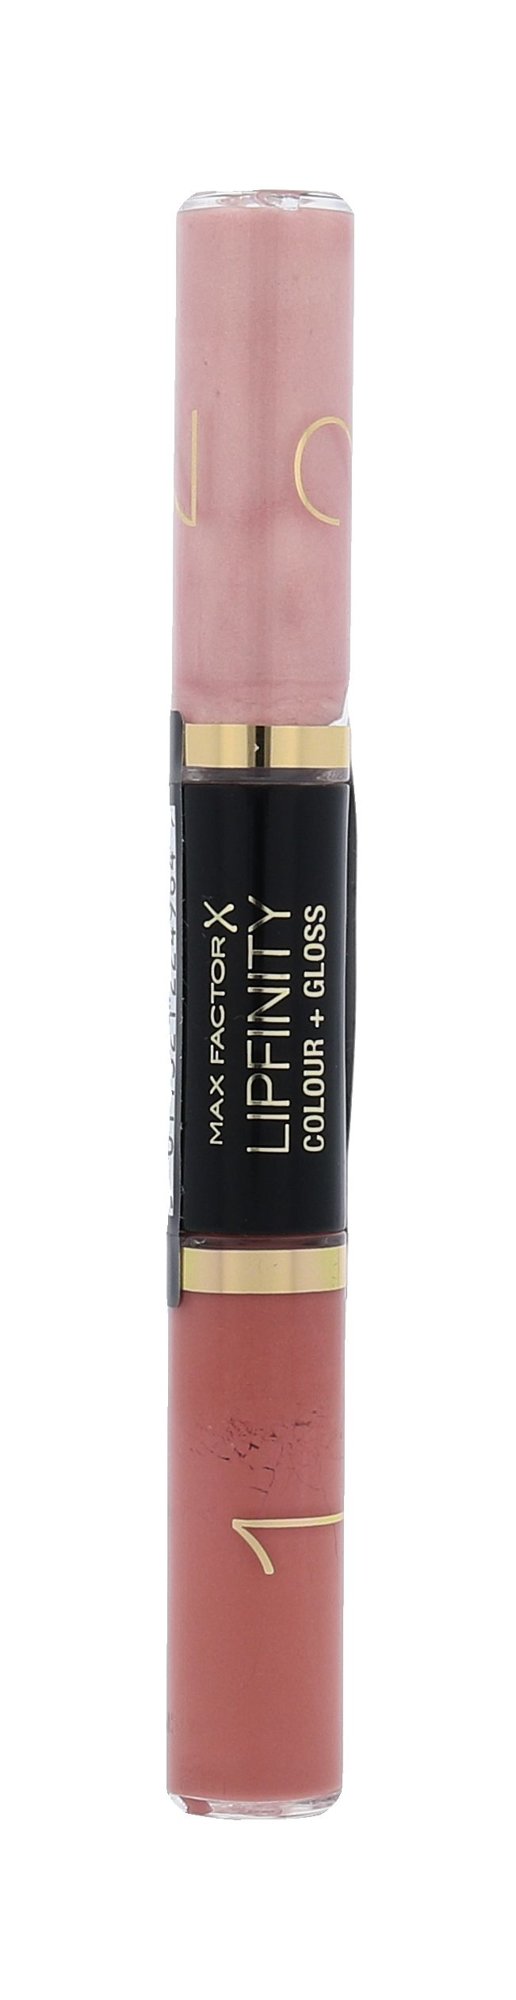 Max Factor Lipfinity Colour + Gloss 2x3ml lūpdažis